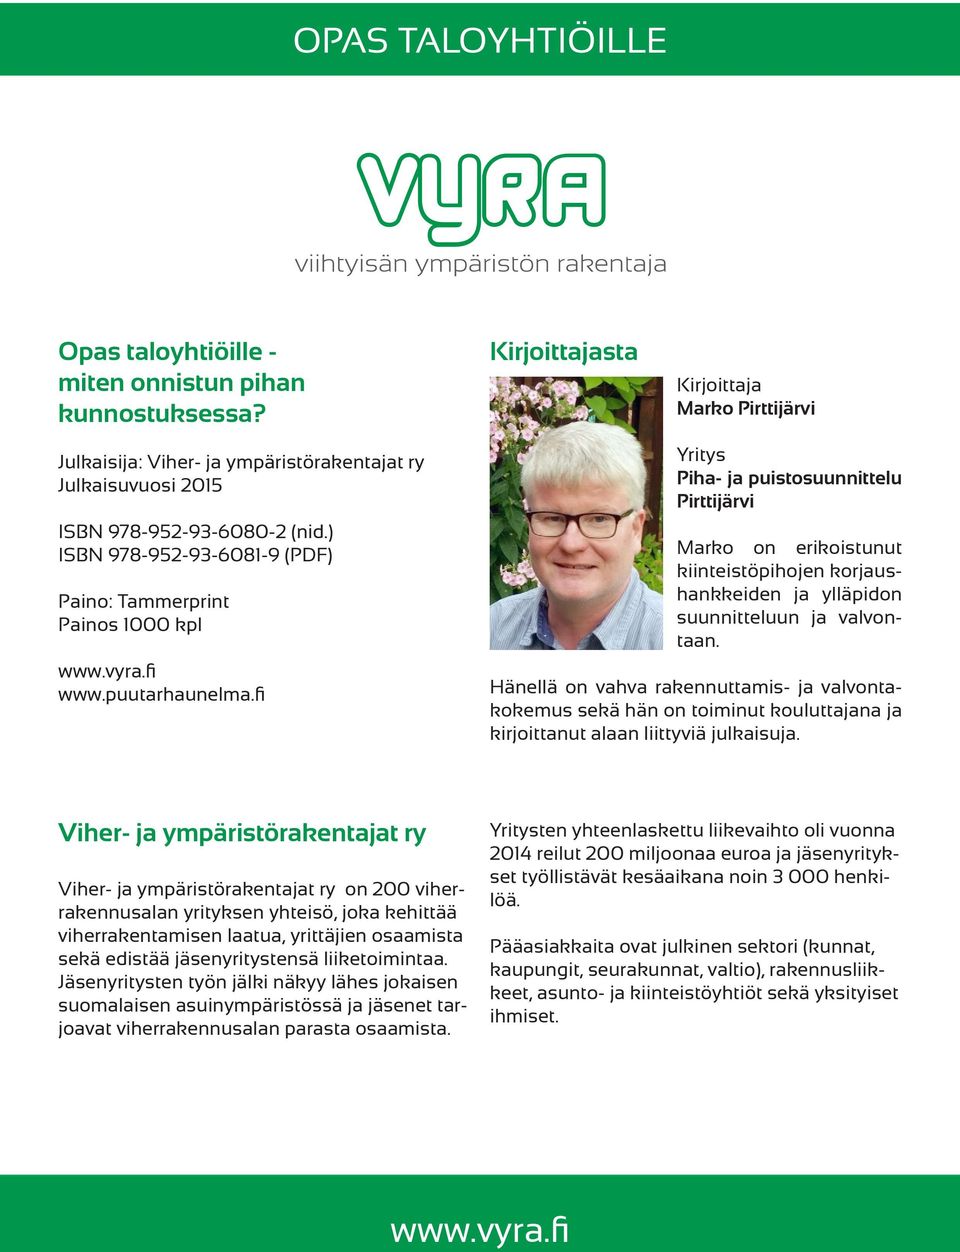 fi Yritys Piha- ja puistosuunnittelu Pirttijärvi Marko on erikoistunut kiinteistöpihojen korjaushankkeiden ja ylläpidon suunnitteluun ja valvontaan.